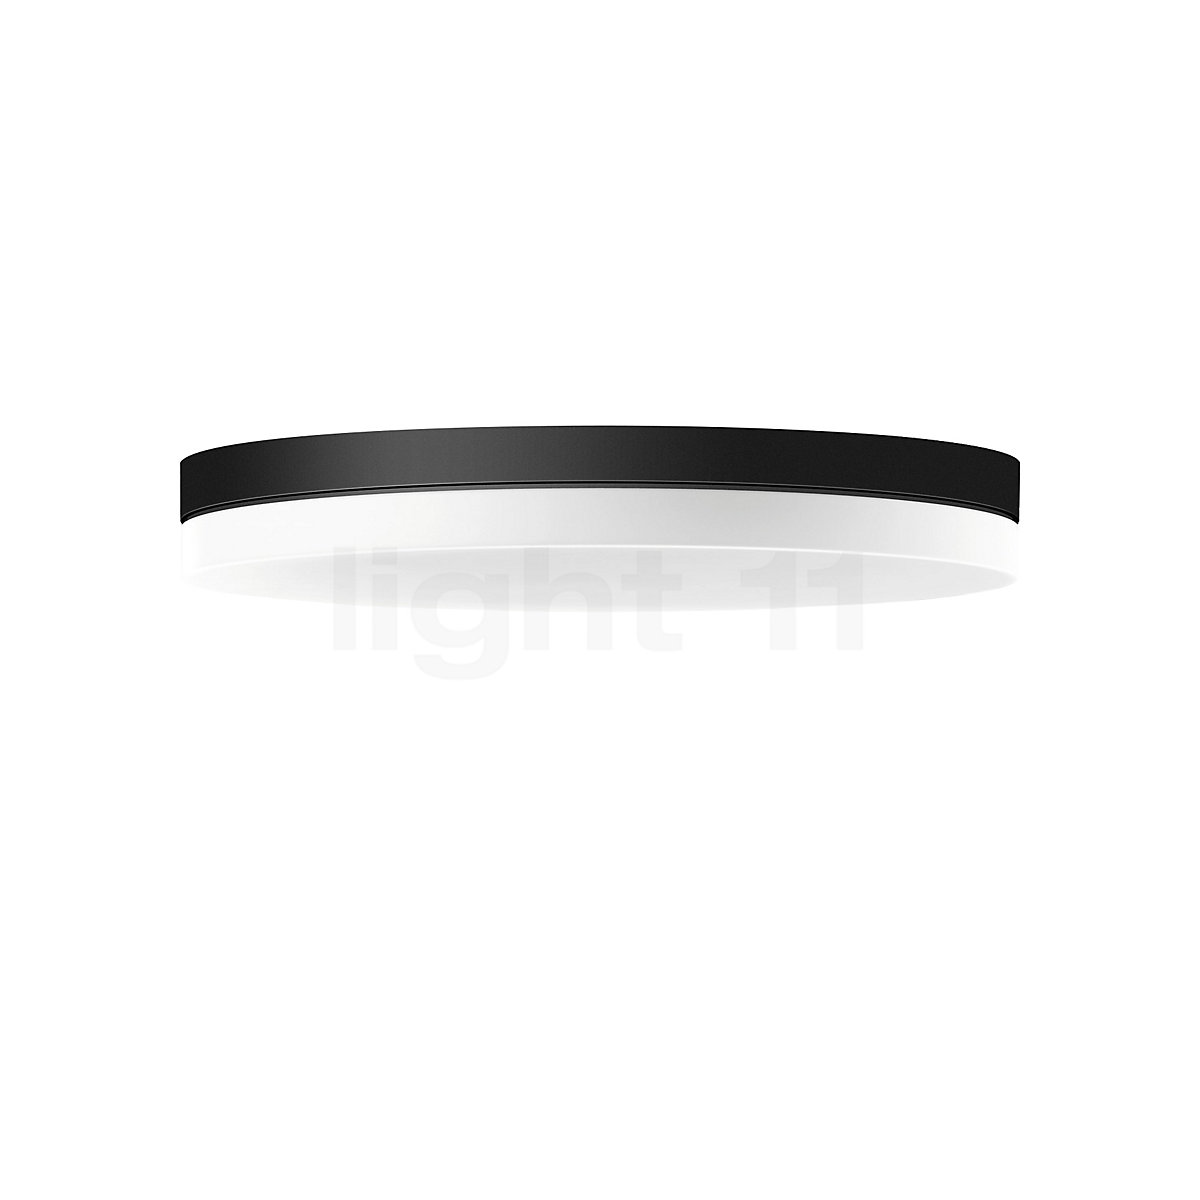 Buy Bega 33681 - wall-/ceiling light LED at light11.eu